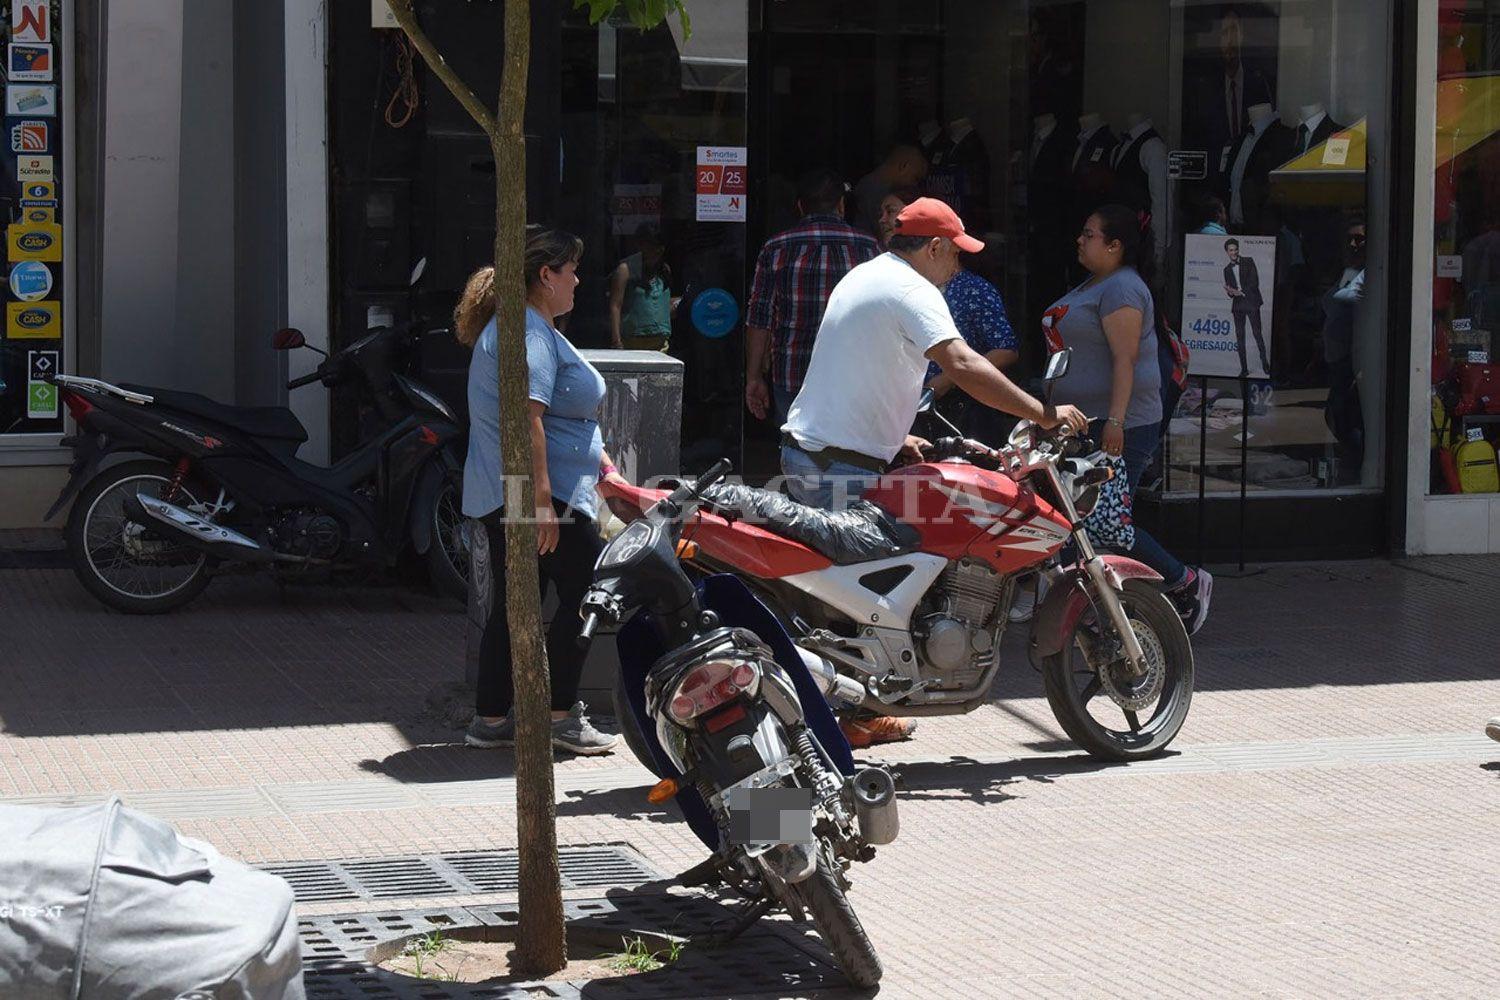 La peatonal Mendoza se convirtió en una playa de estacionamiento para motos